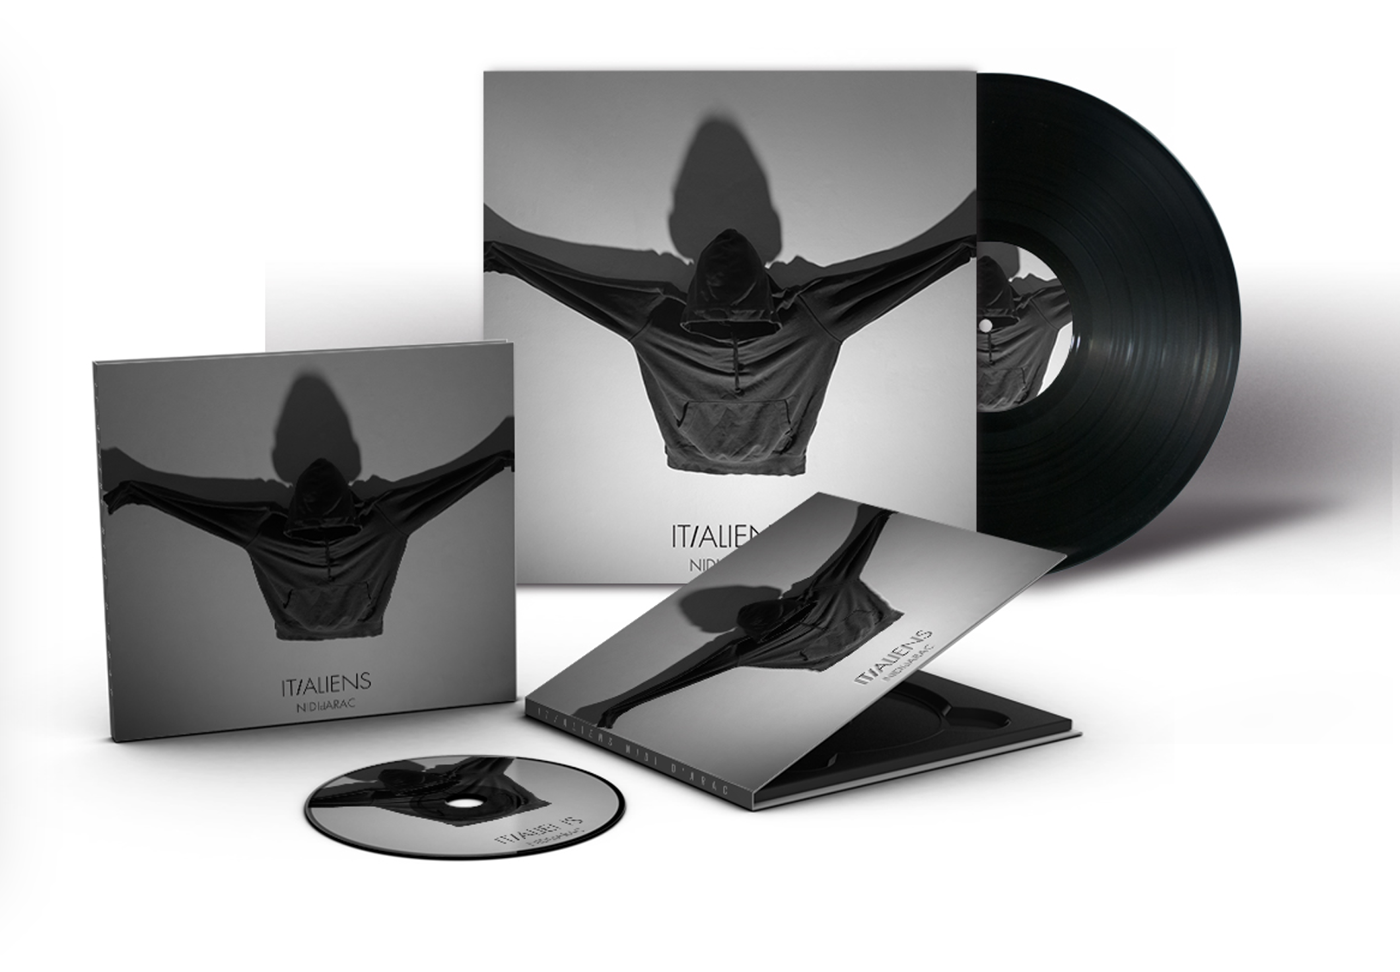 Musique nidi d'arac Album visual identity